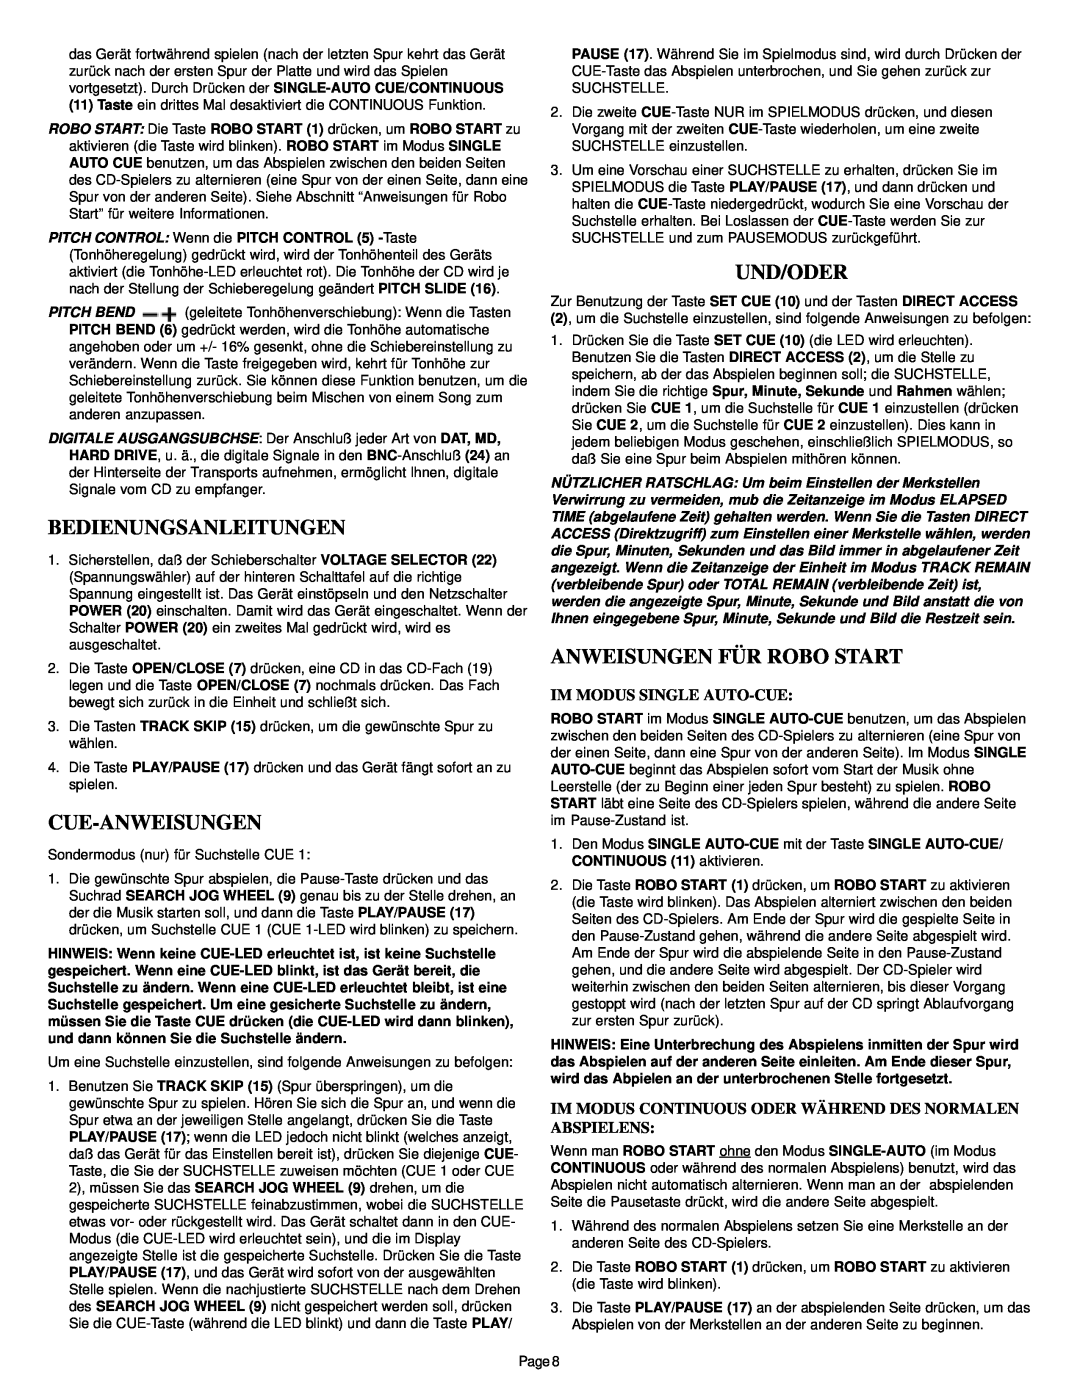 Gemini CD-340 manual Bedienungsanleitungen, Cue-Anweisungen, Und/Oder, Anweisungen Für Robo Start, Im Modus Single Auto-Cue 